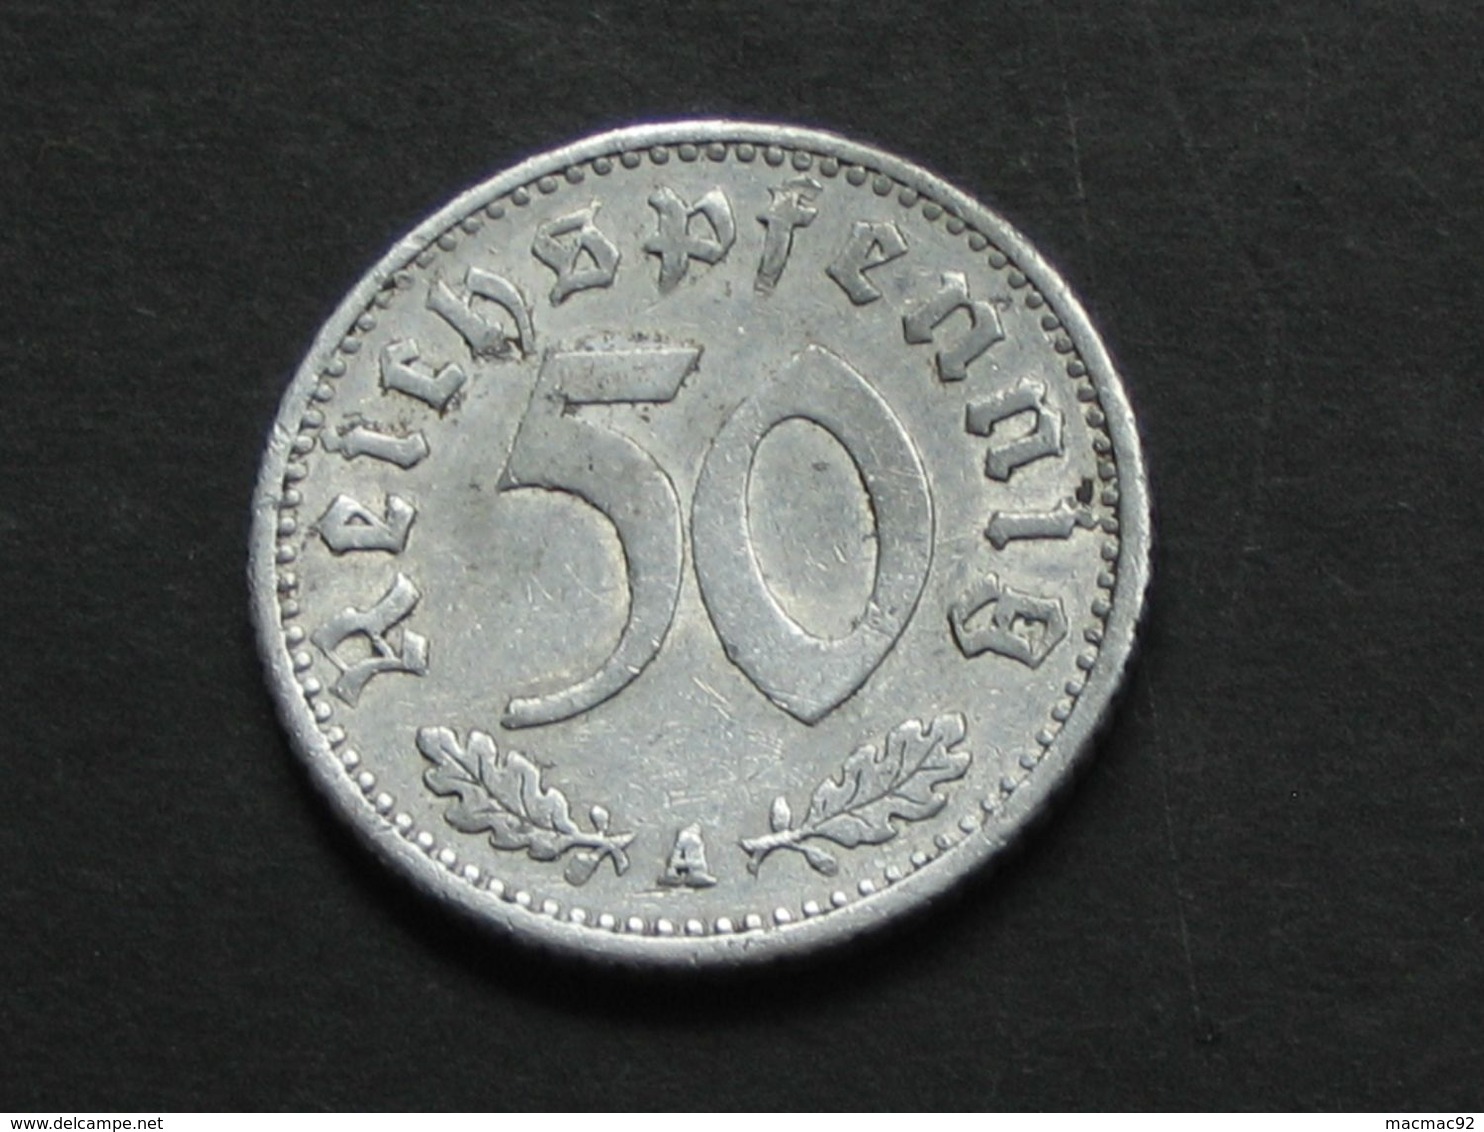 50 Reichspfennig 1935 A  - Germany- Allemagne 3 Eme Reich   **** EN ACHAT IMMEDIAT **** - 50 Reichspfennig